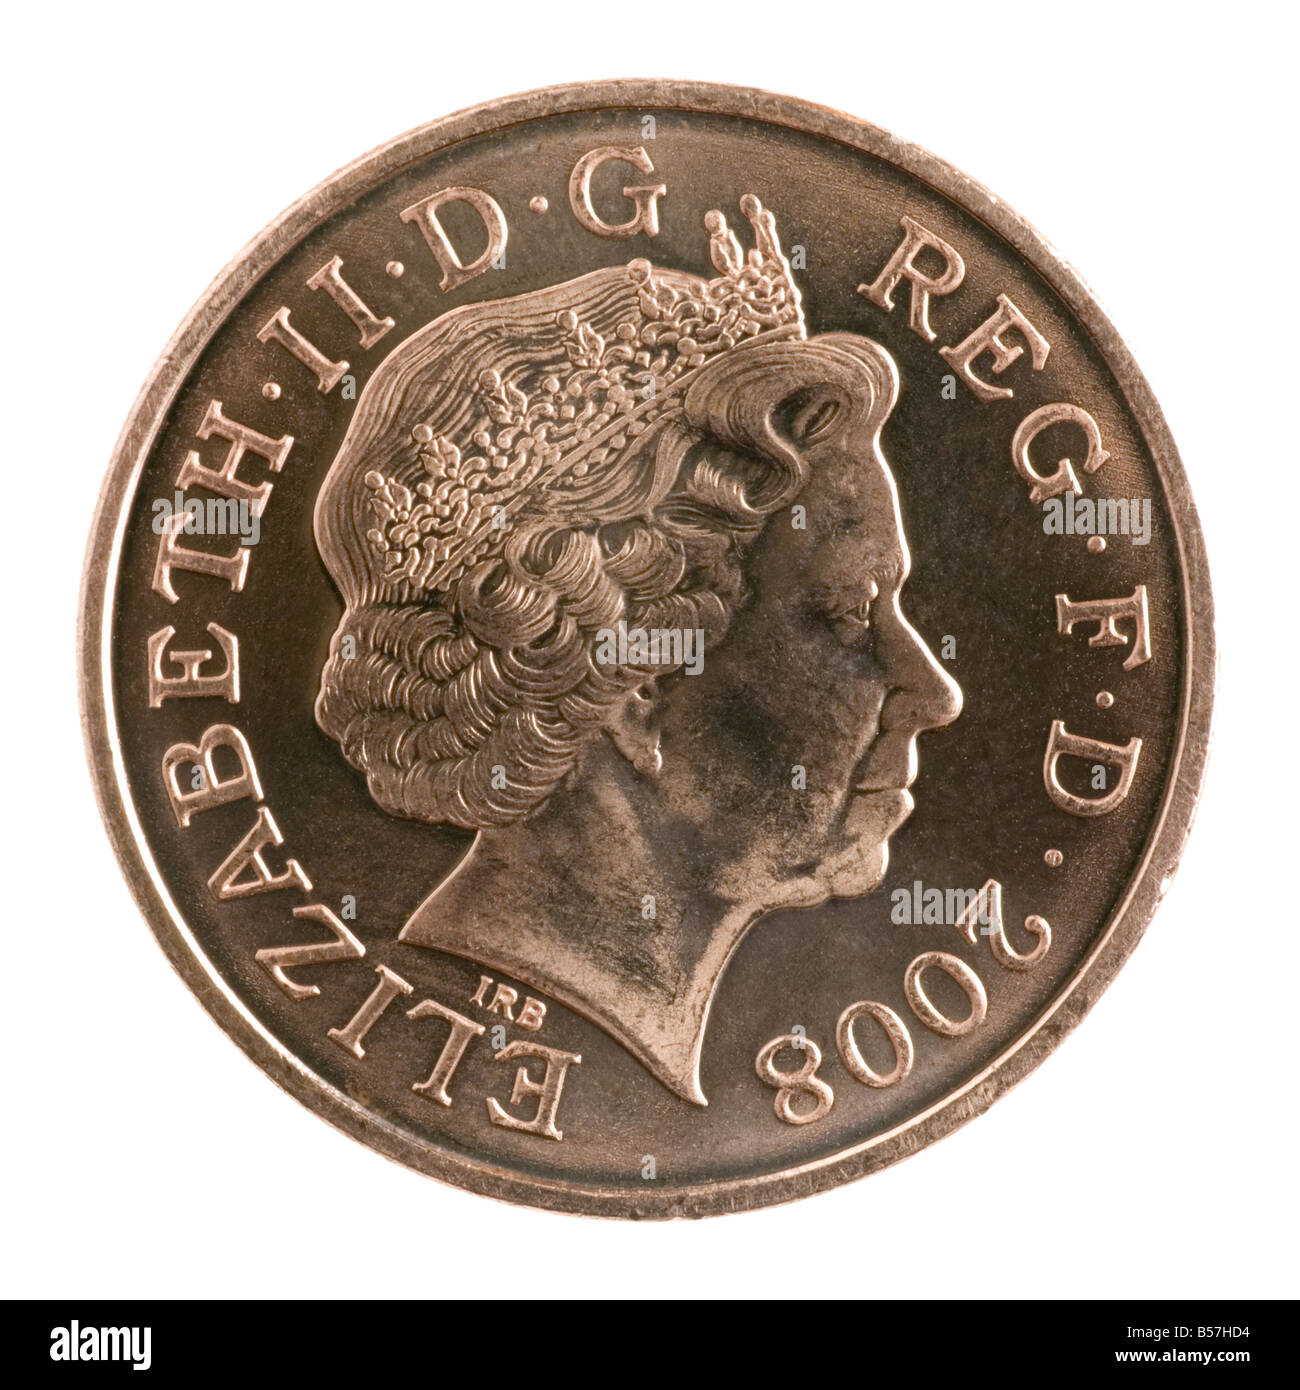 2008-neues Design für die britische Münzen 2 Pence-Stück Stockfoto